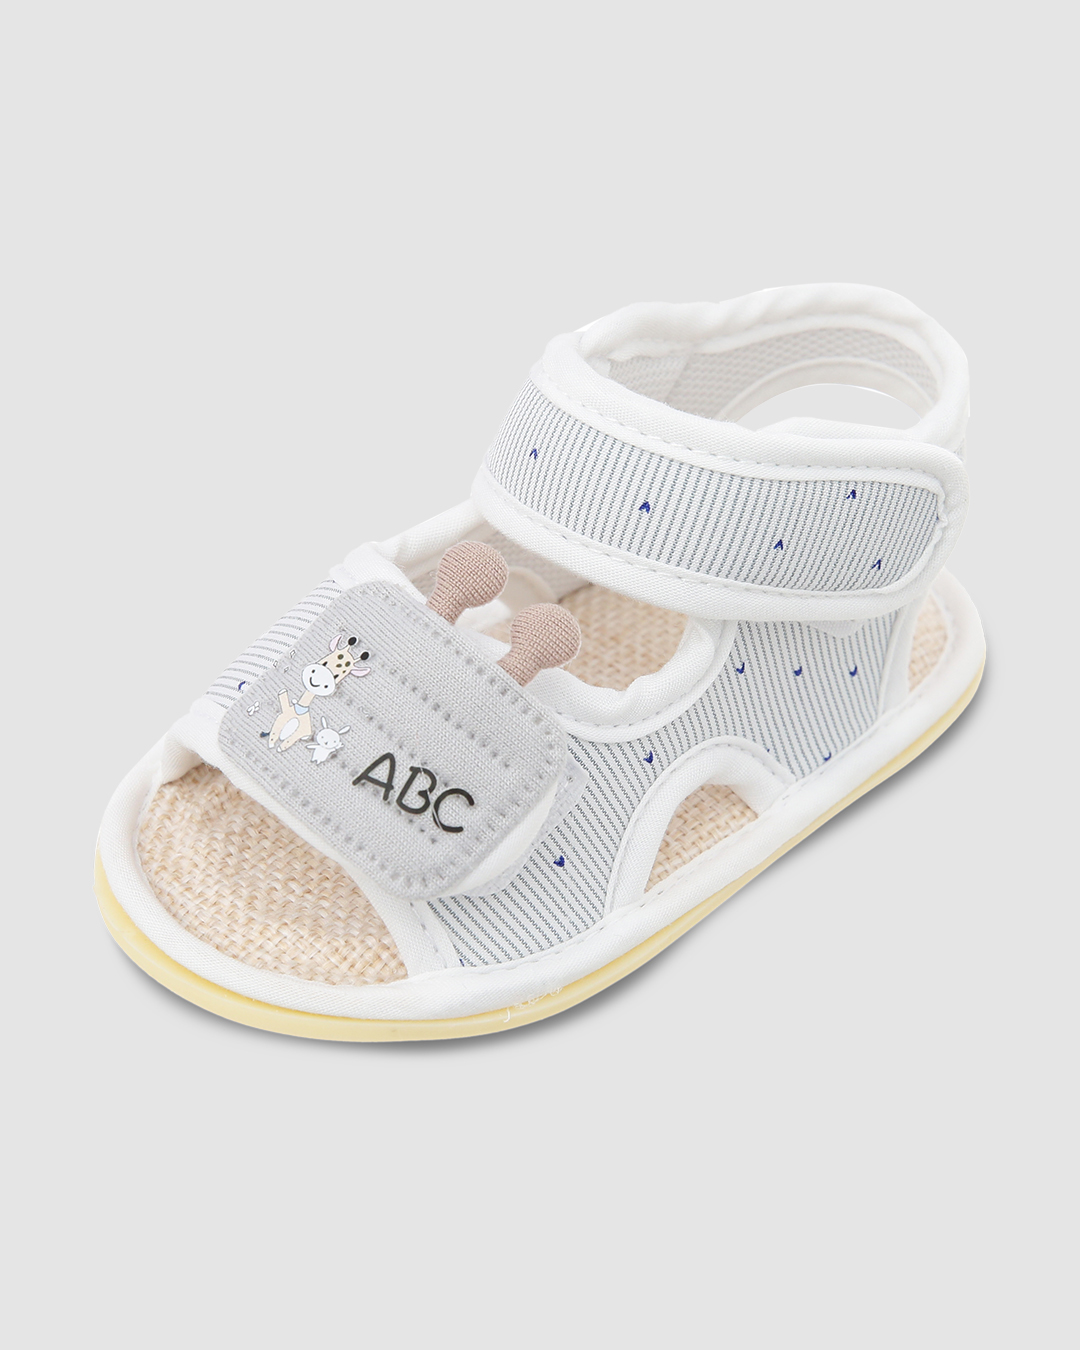 Giày tập đi Á Châu AC526 in chữ ABC màu xám